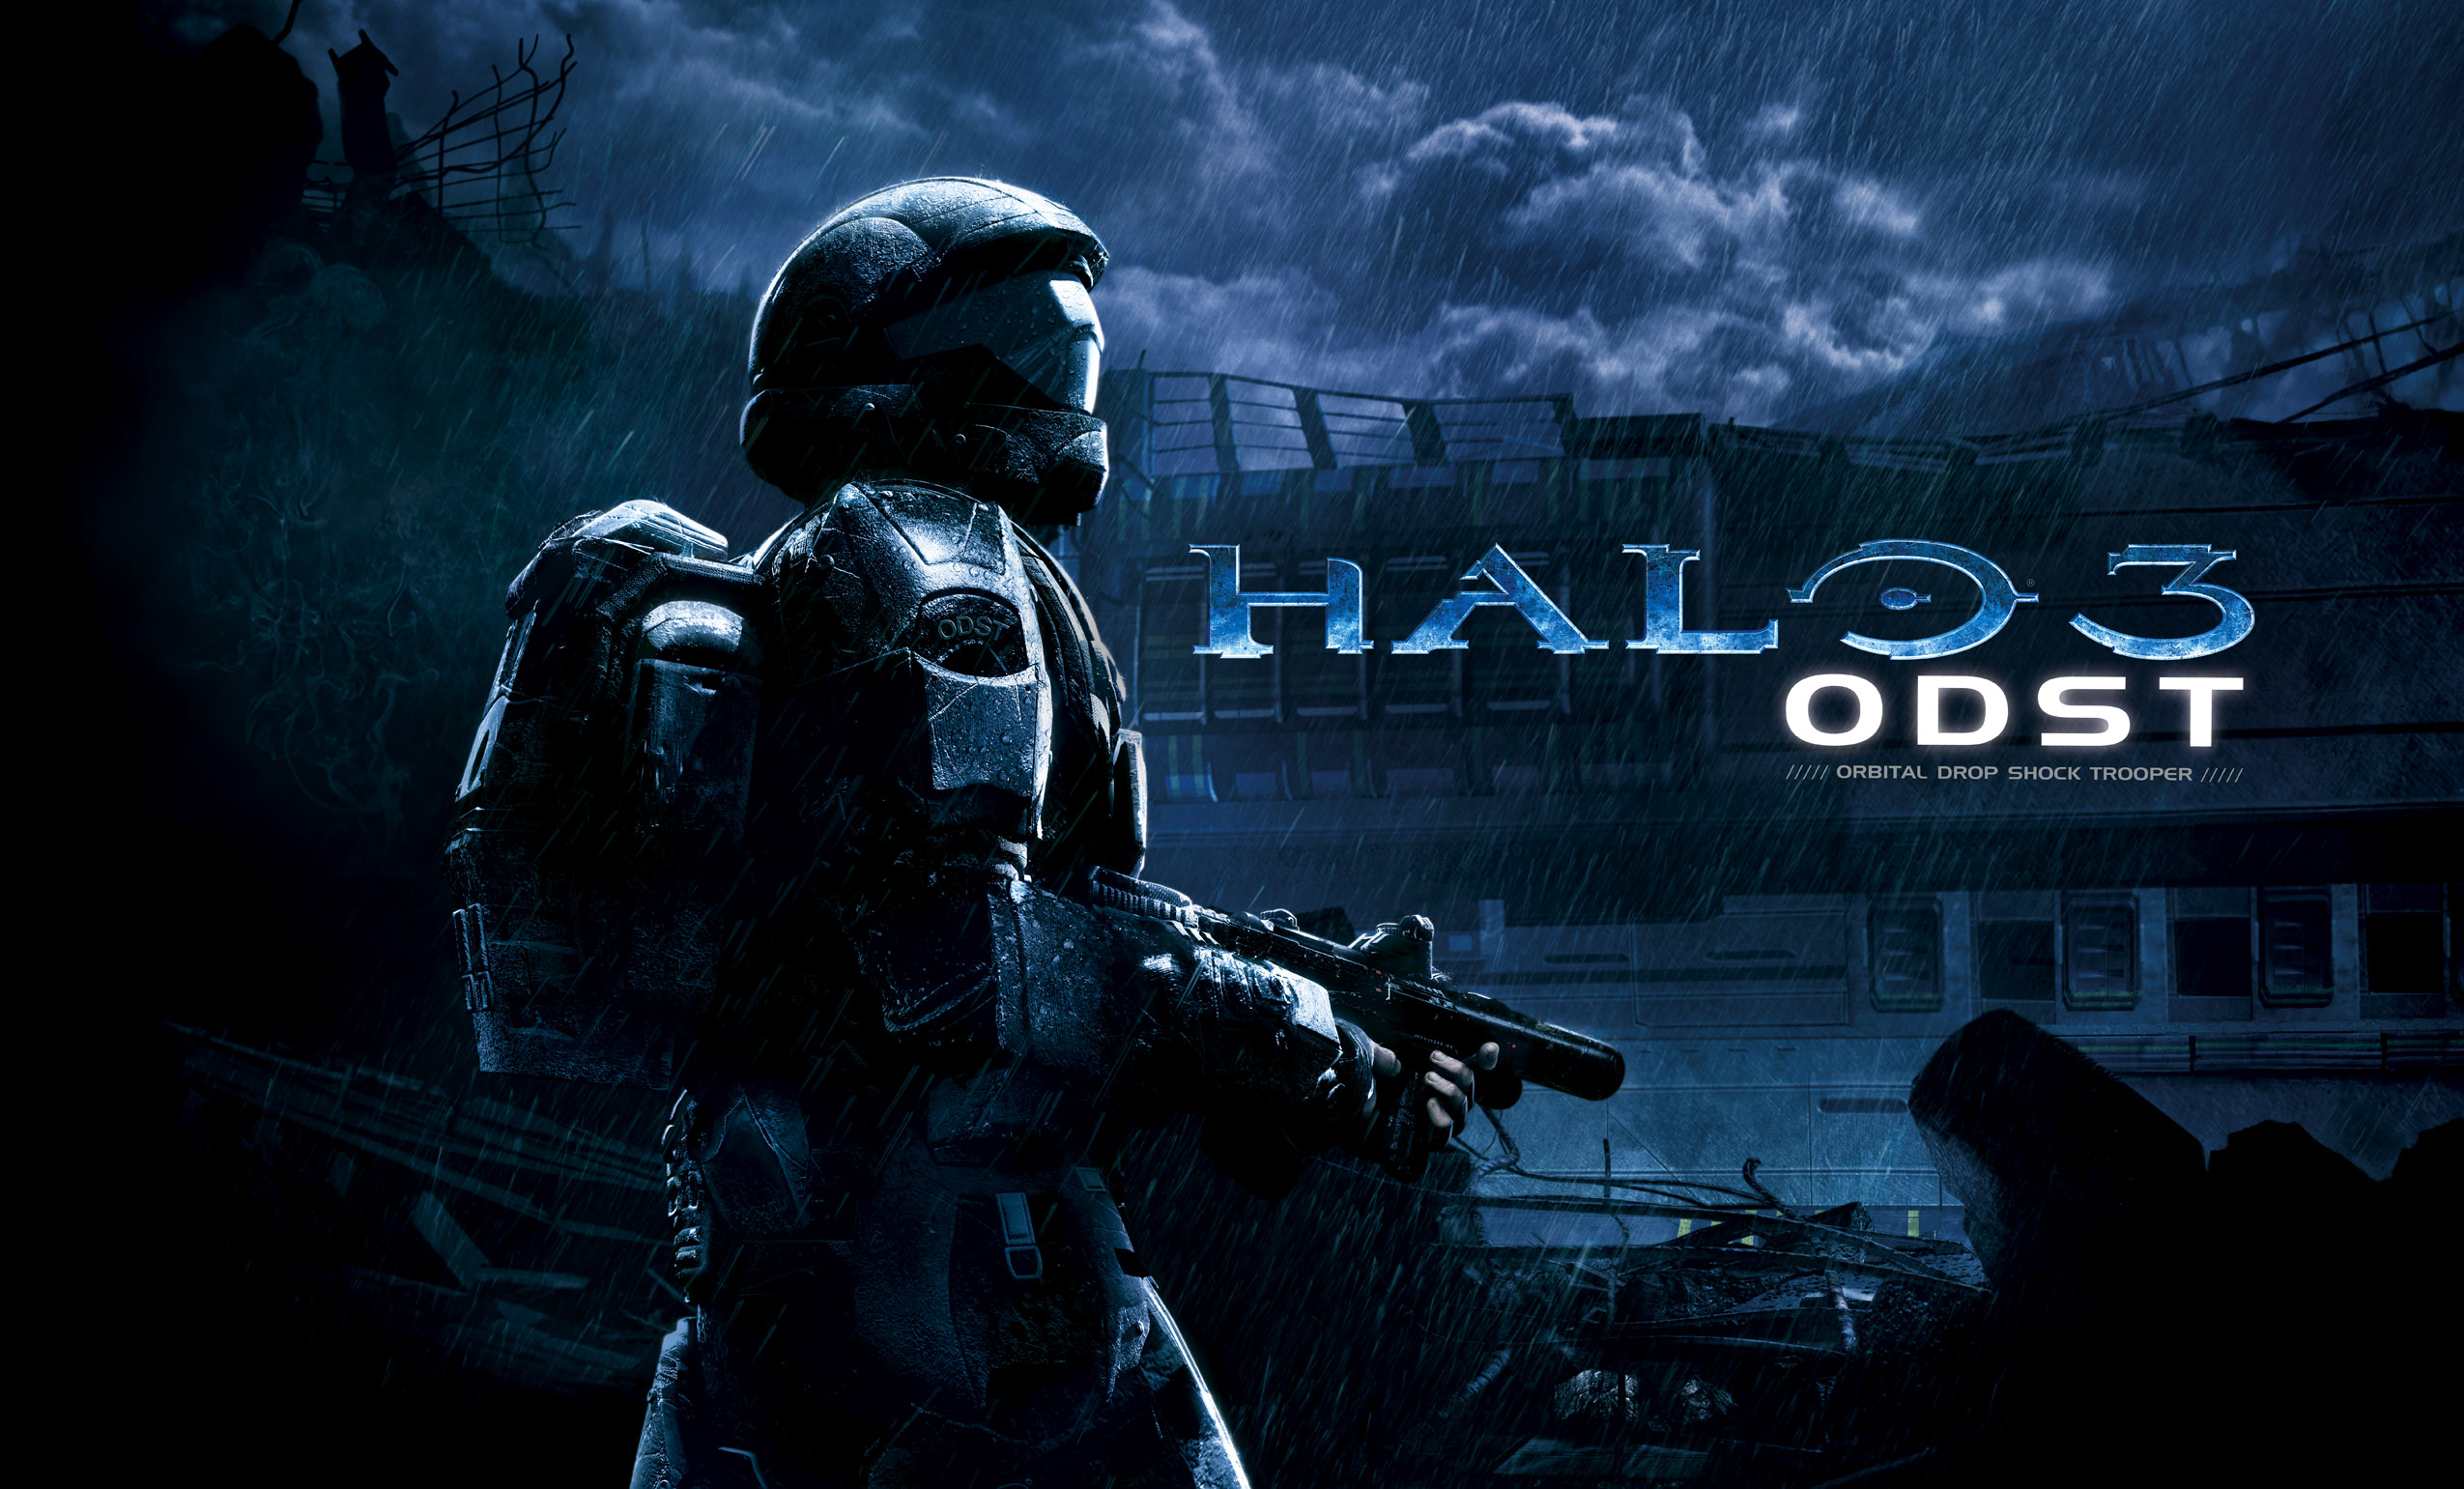 Melhores papéis de parede de Halo 3 para tela do telefone